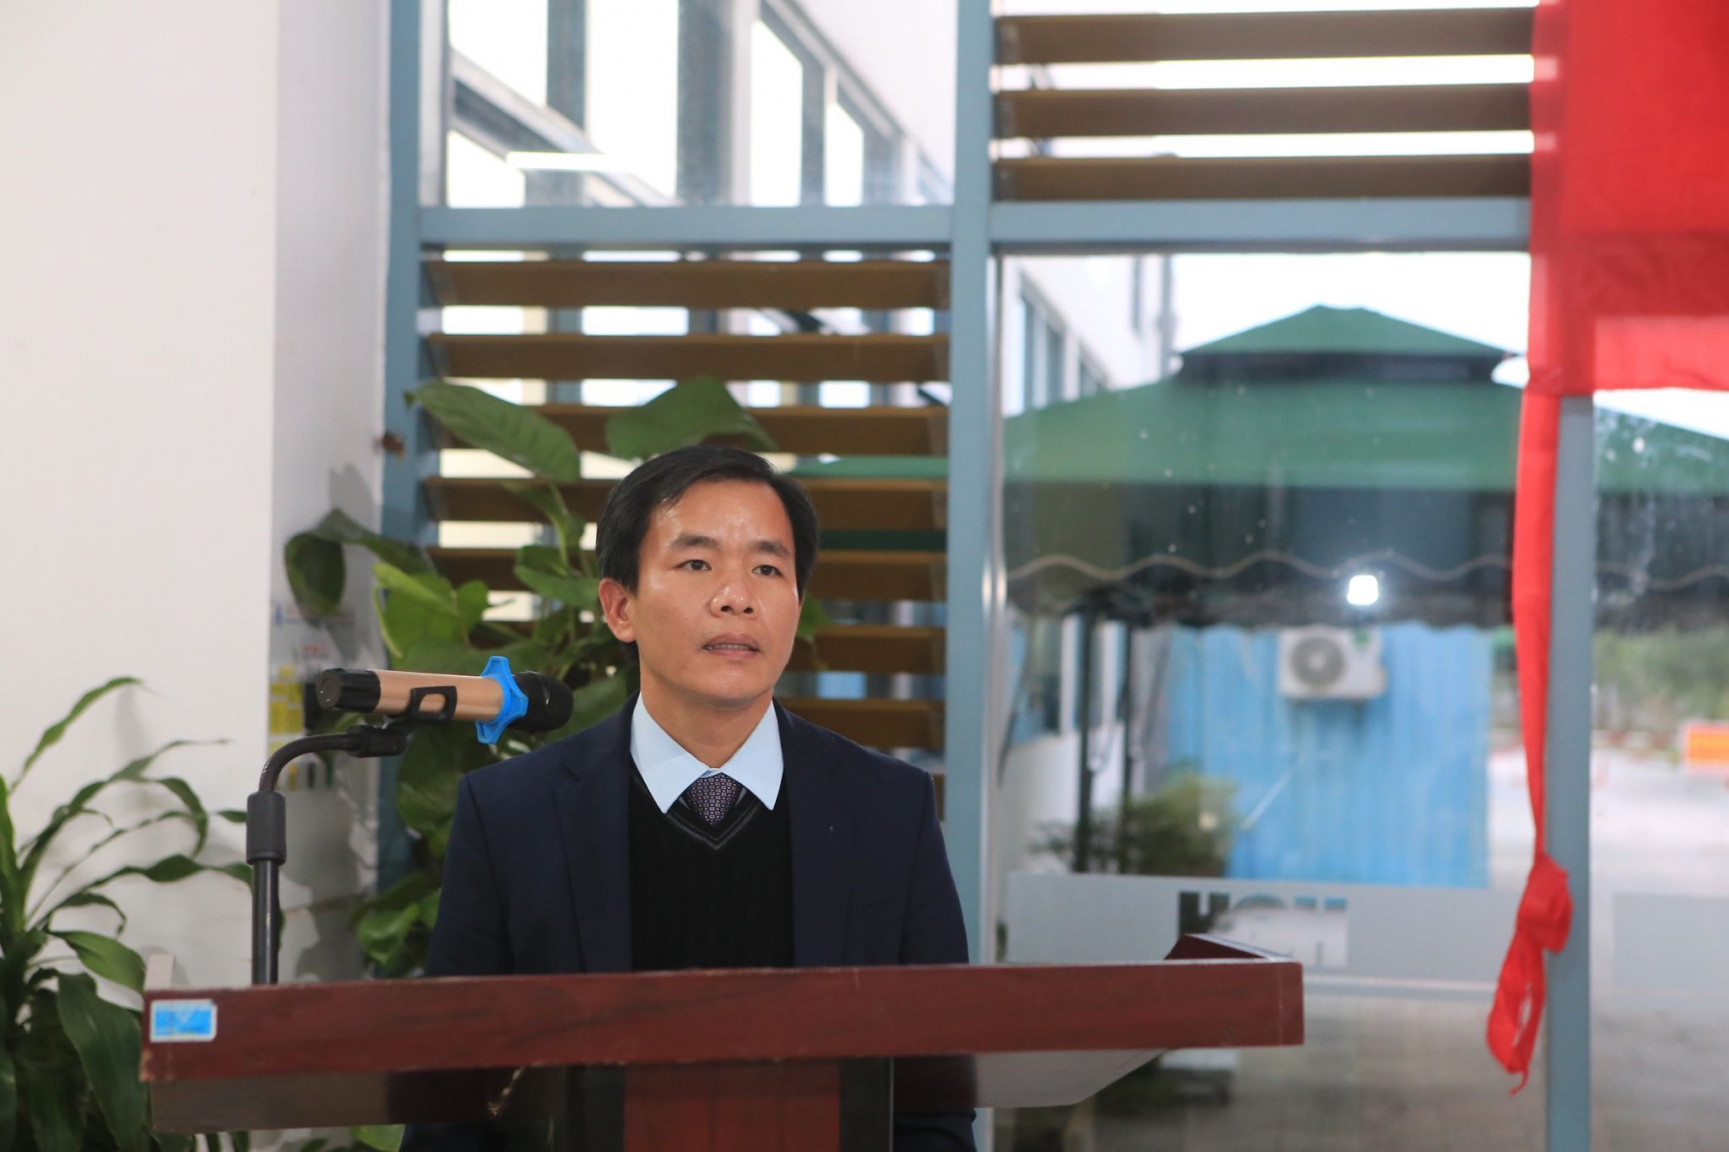 Ông Nguyễn Văn Phương, Chủ tịch UBND tỉnh Thừa Thiên - Huế tham dự và phát biểu tại buổi lễ.